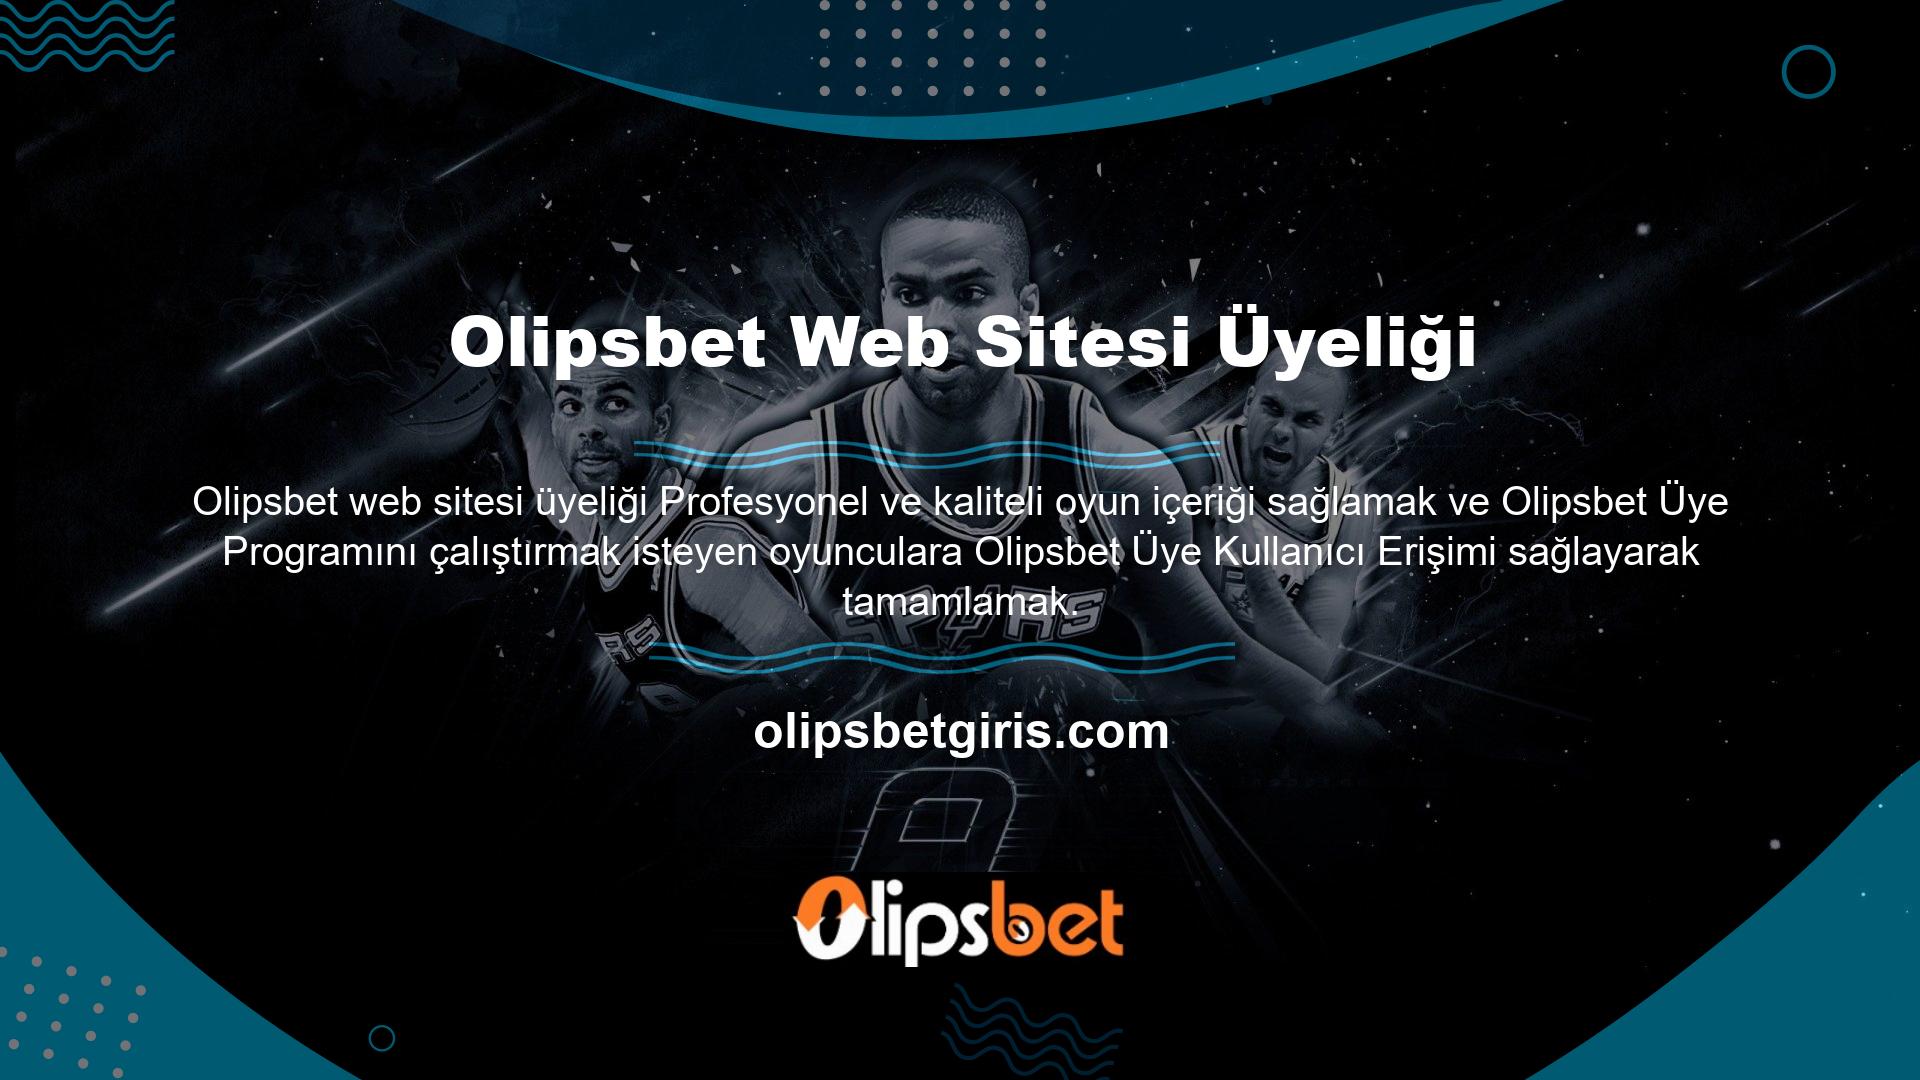 Olipsbet web sitesi üyeliği